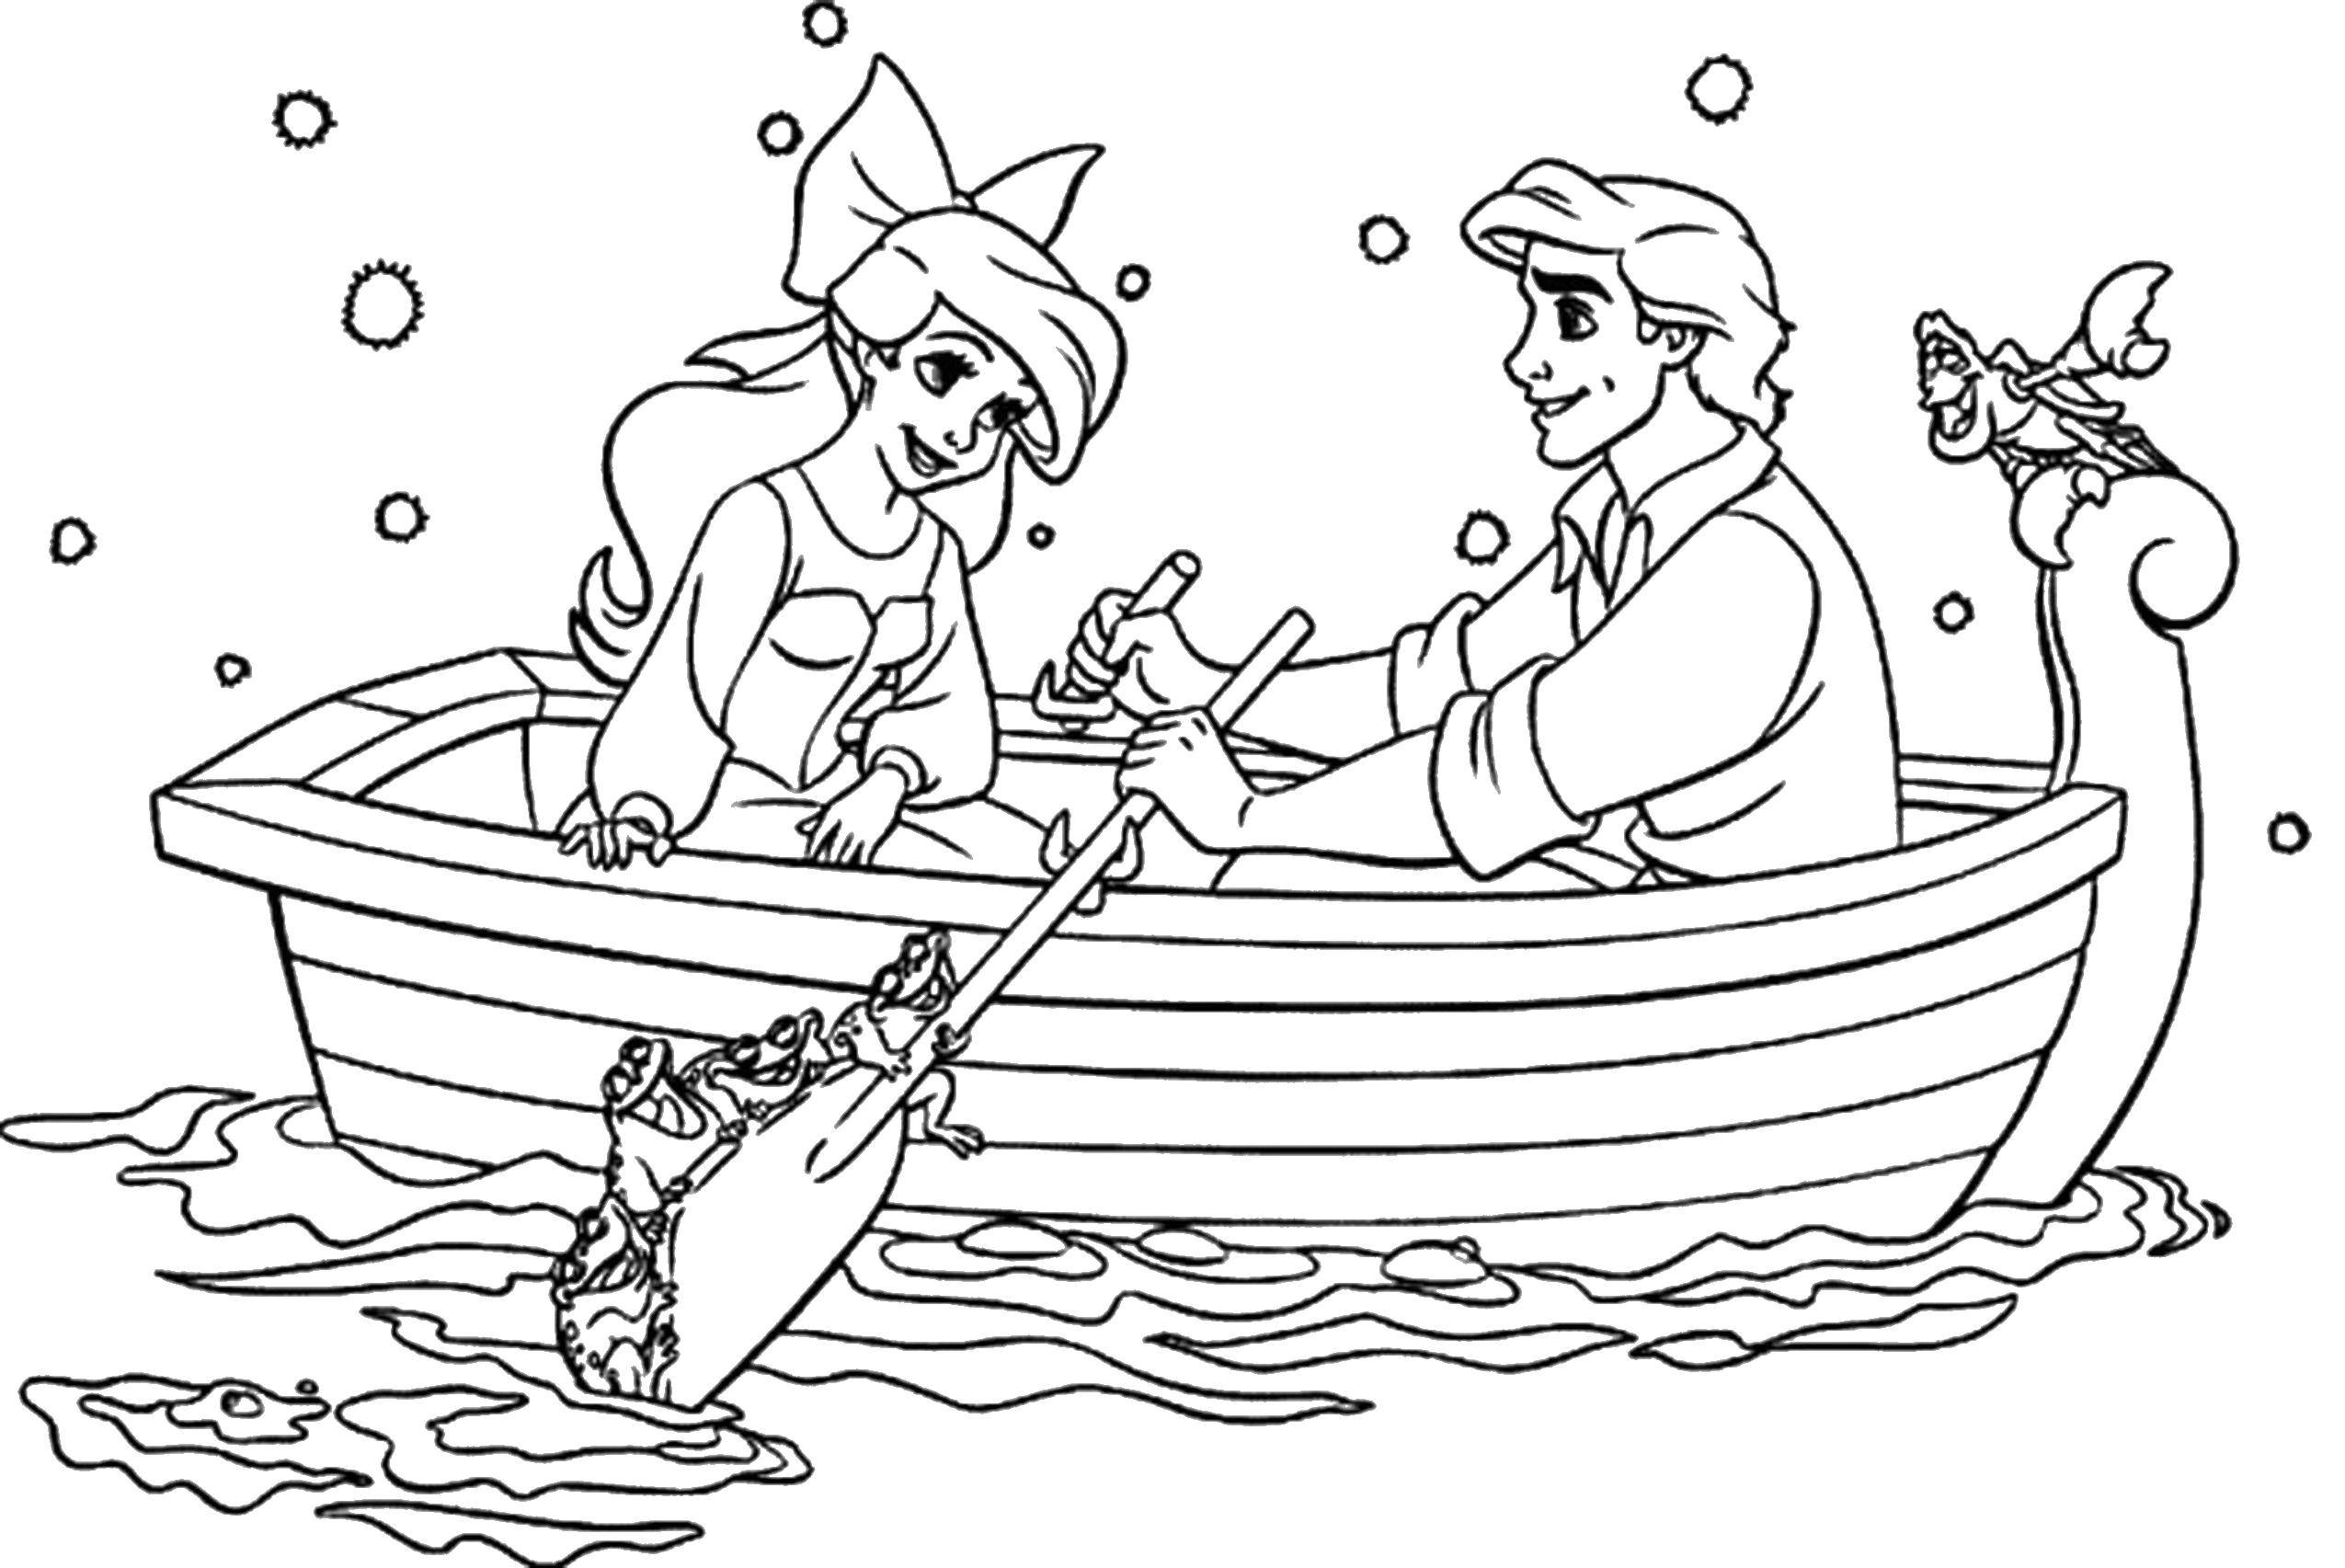 Розмальовки  Аріель з коханим у човні. Завантажити розмальовку Дісней, русалонька, Аріель.  Роздрукувати ,розмальовки,